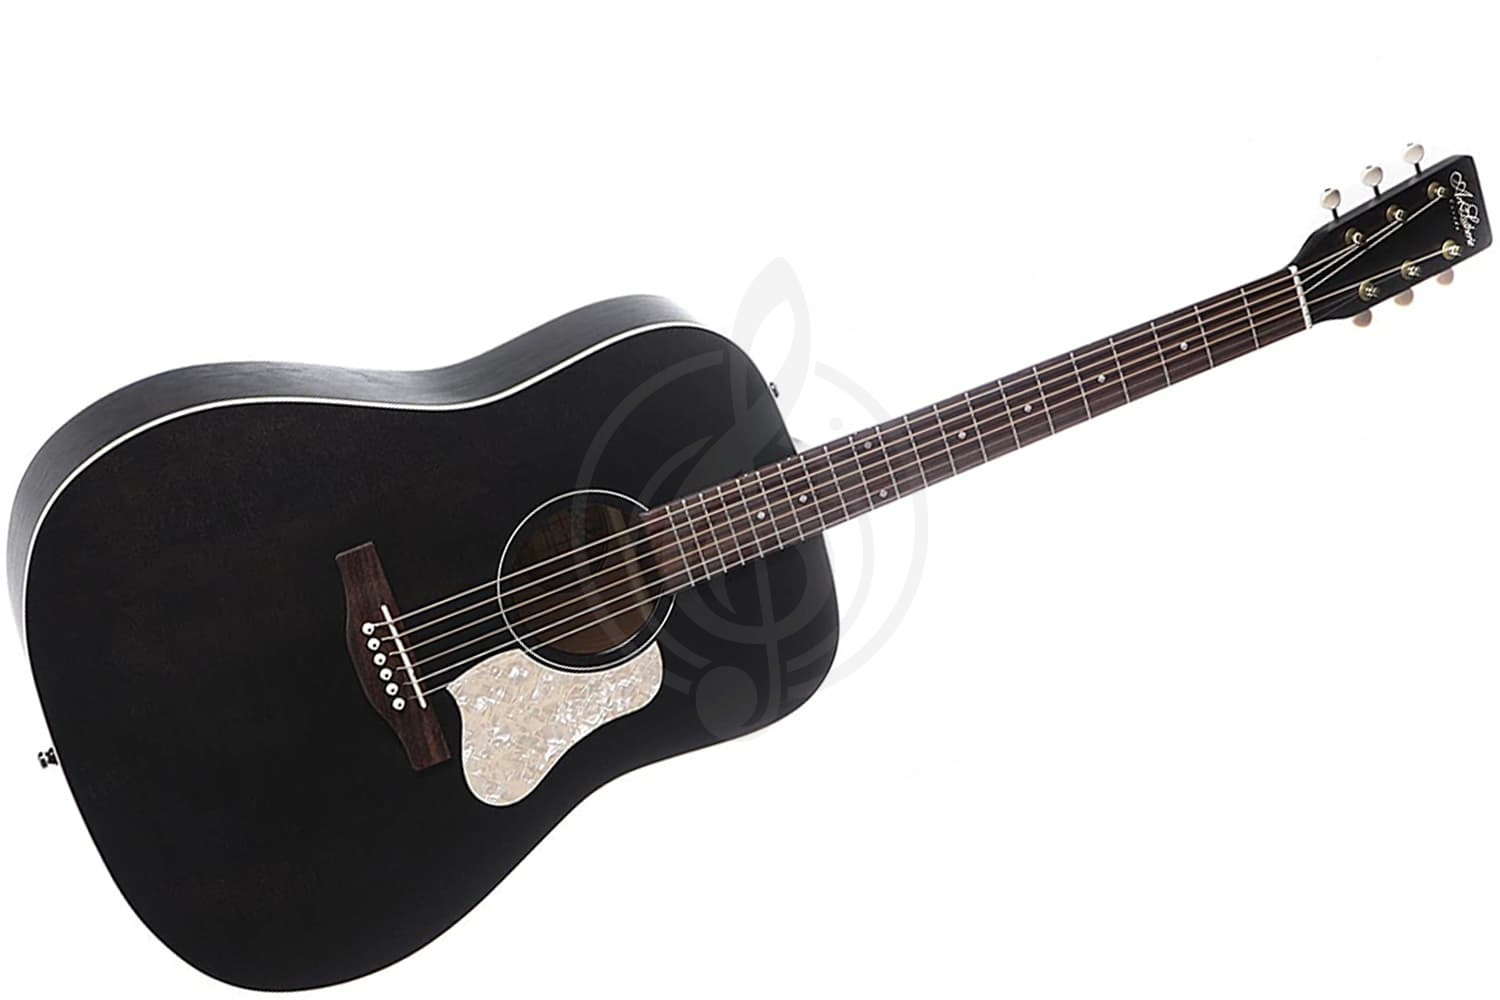 Акустическая гитара Акустические гитары Art & Lutherie Art & Lutherie Americana Faded Black Акустическая гитара Faded Black - фото 1